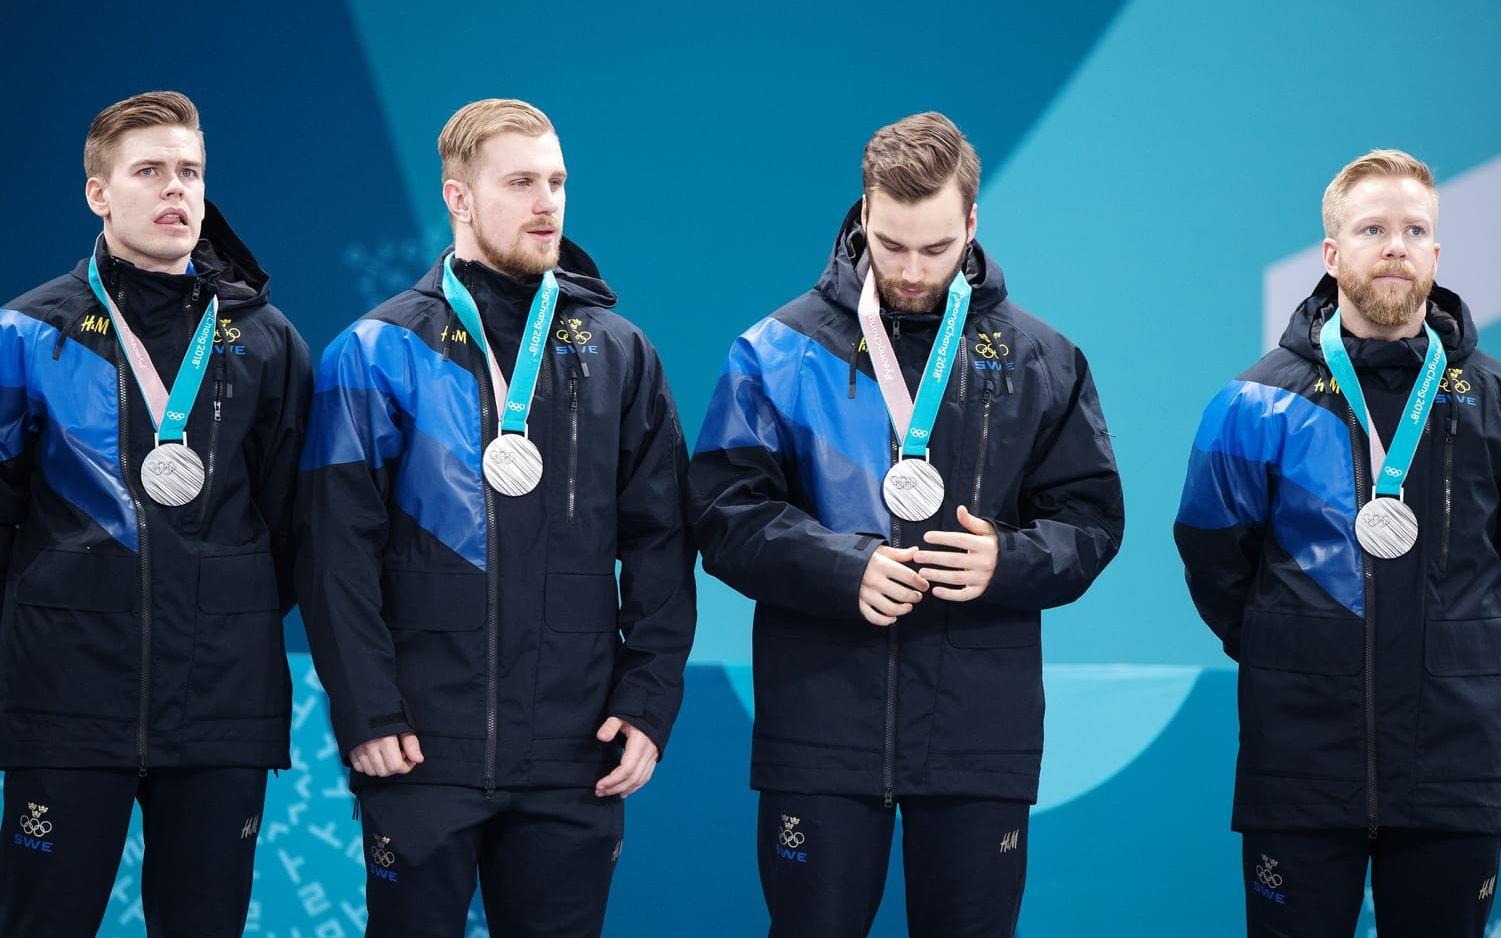 Lag Edin, med Niklas Edin, Oskar Eriksson, Rasmus Wranå, Christoffer Sundgren och reserven Henrik Leek, tog silver i curling